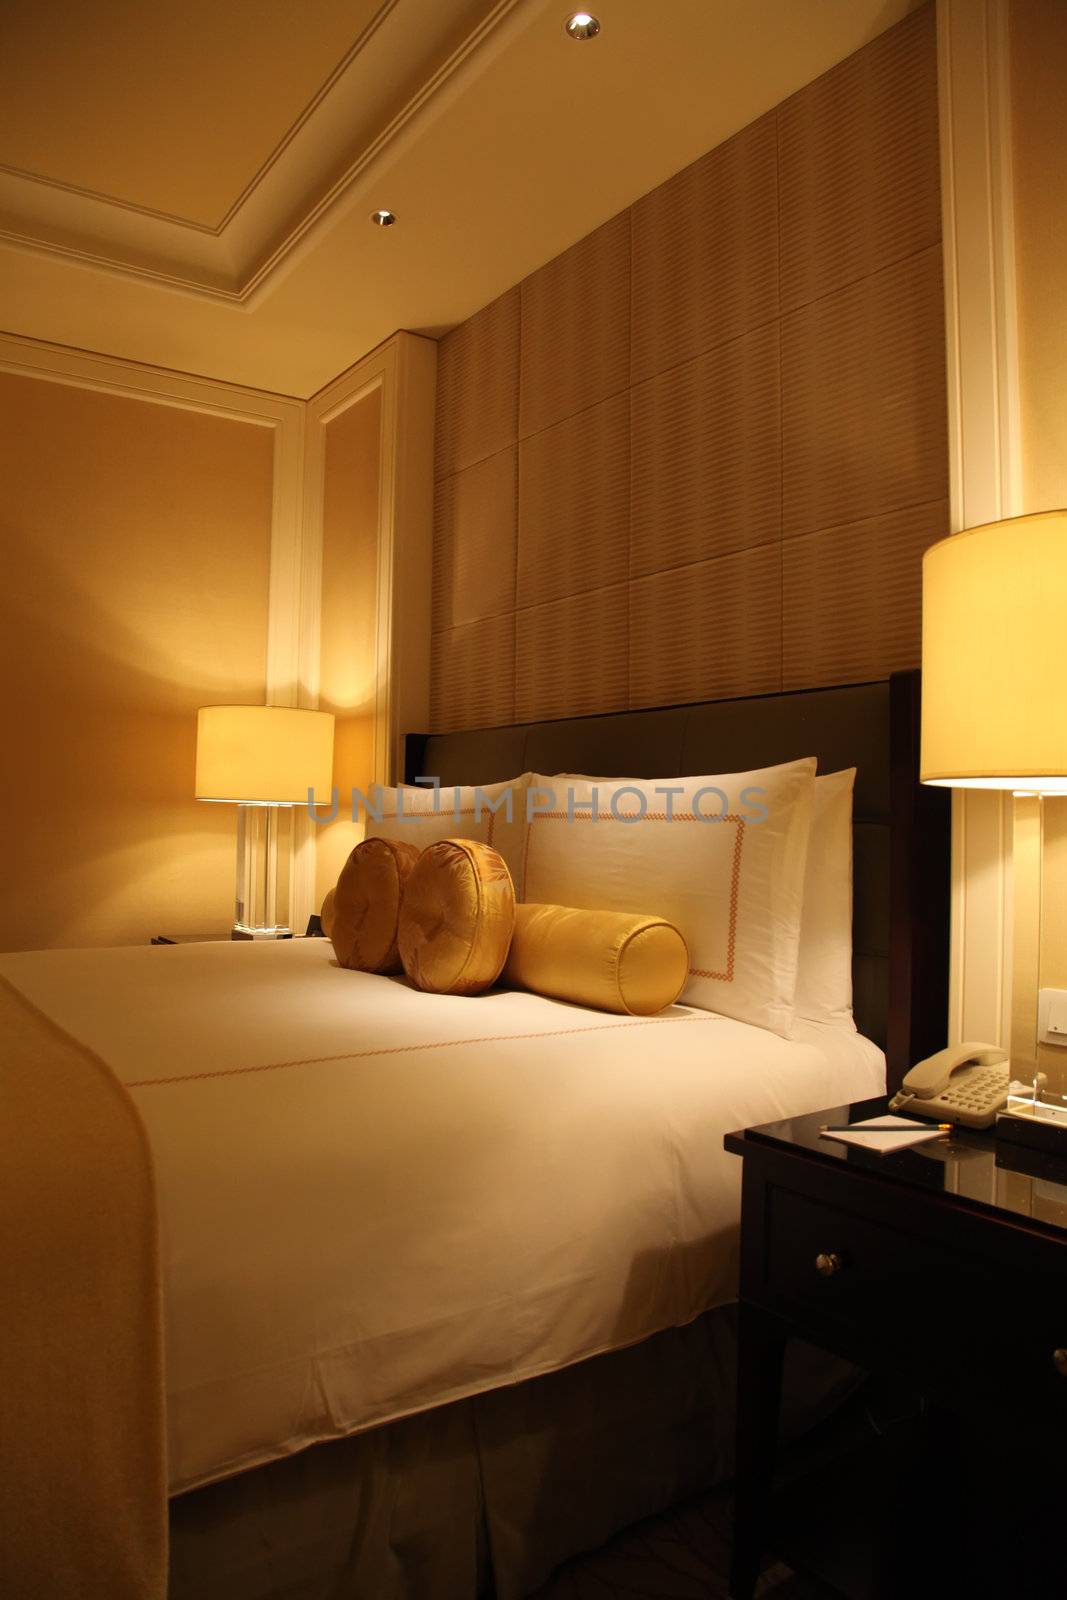 Luxury Hotel Room by kentoh